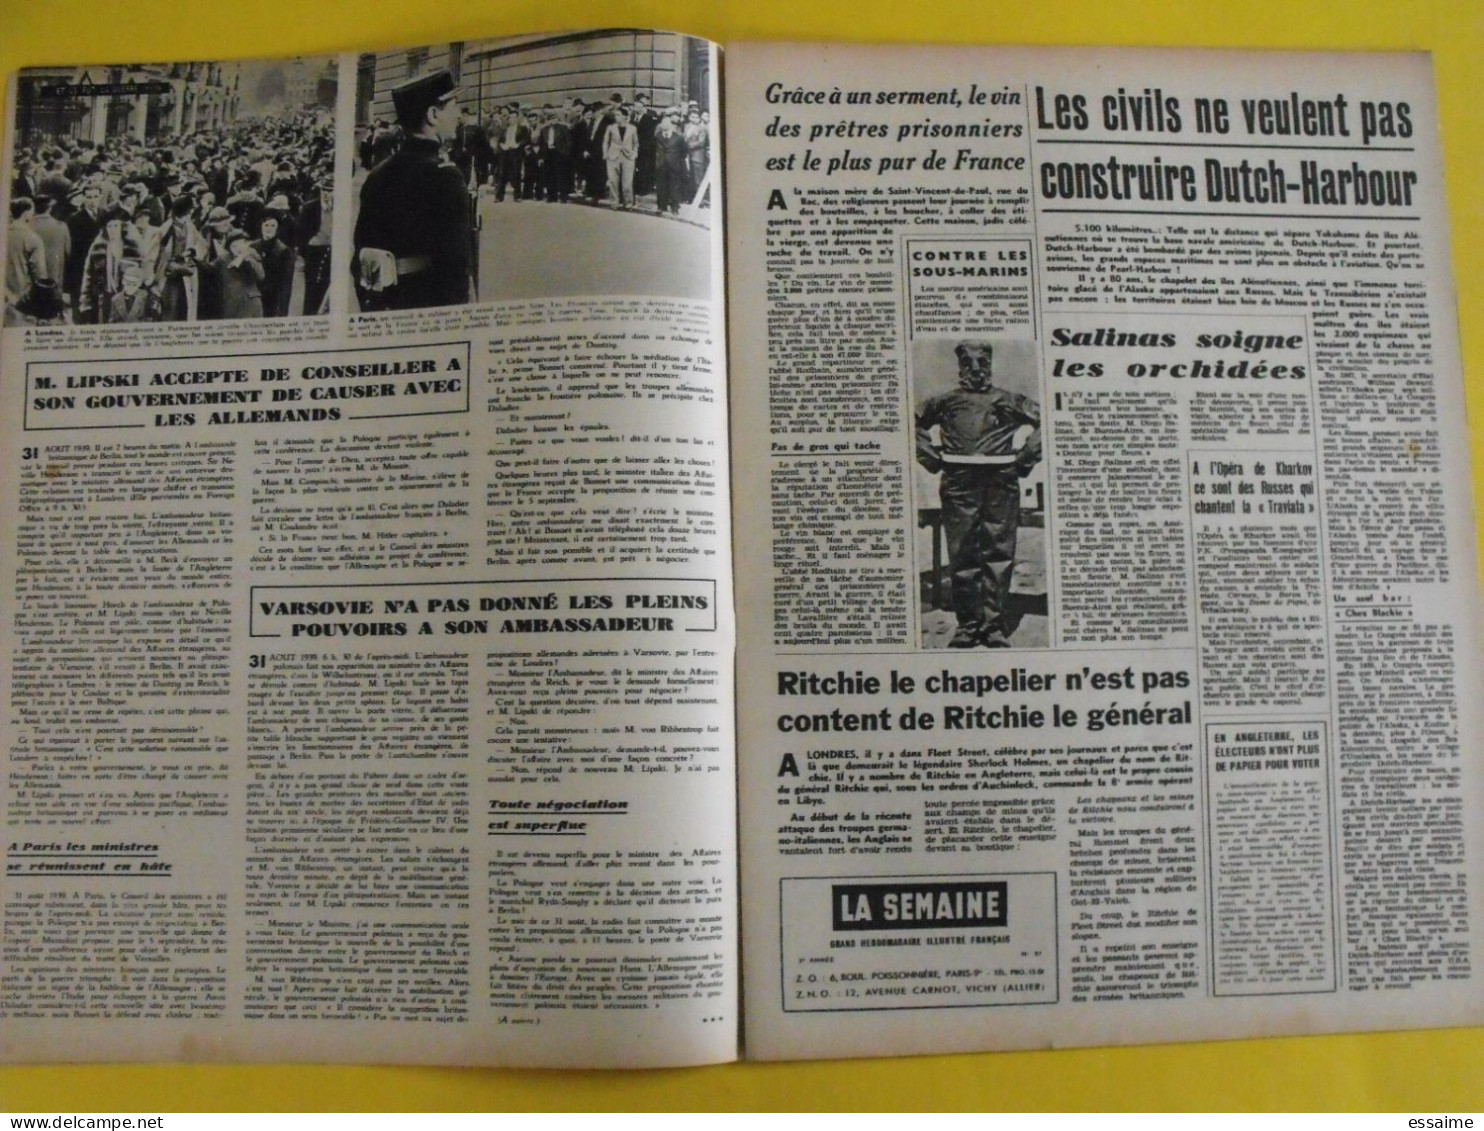 6 revues La semaine de 1942. actualités guerre photos collaboration madagascar jean marais pétain chine crimée inde